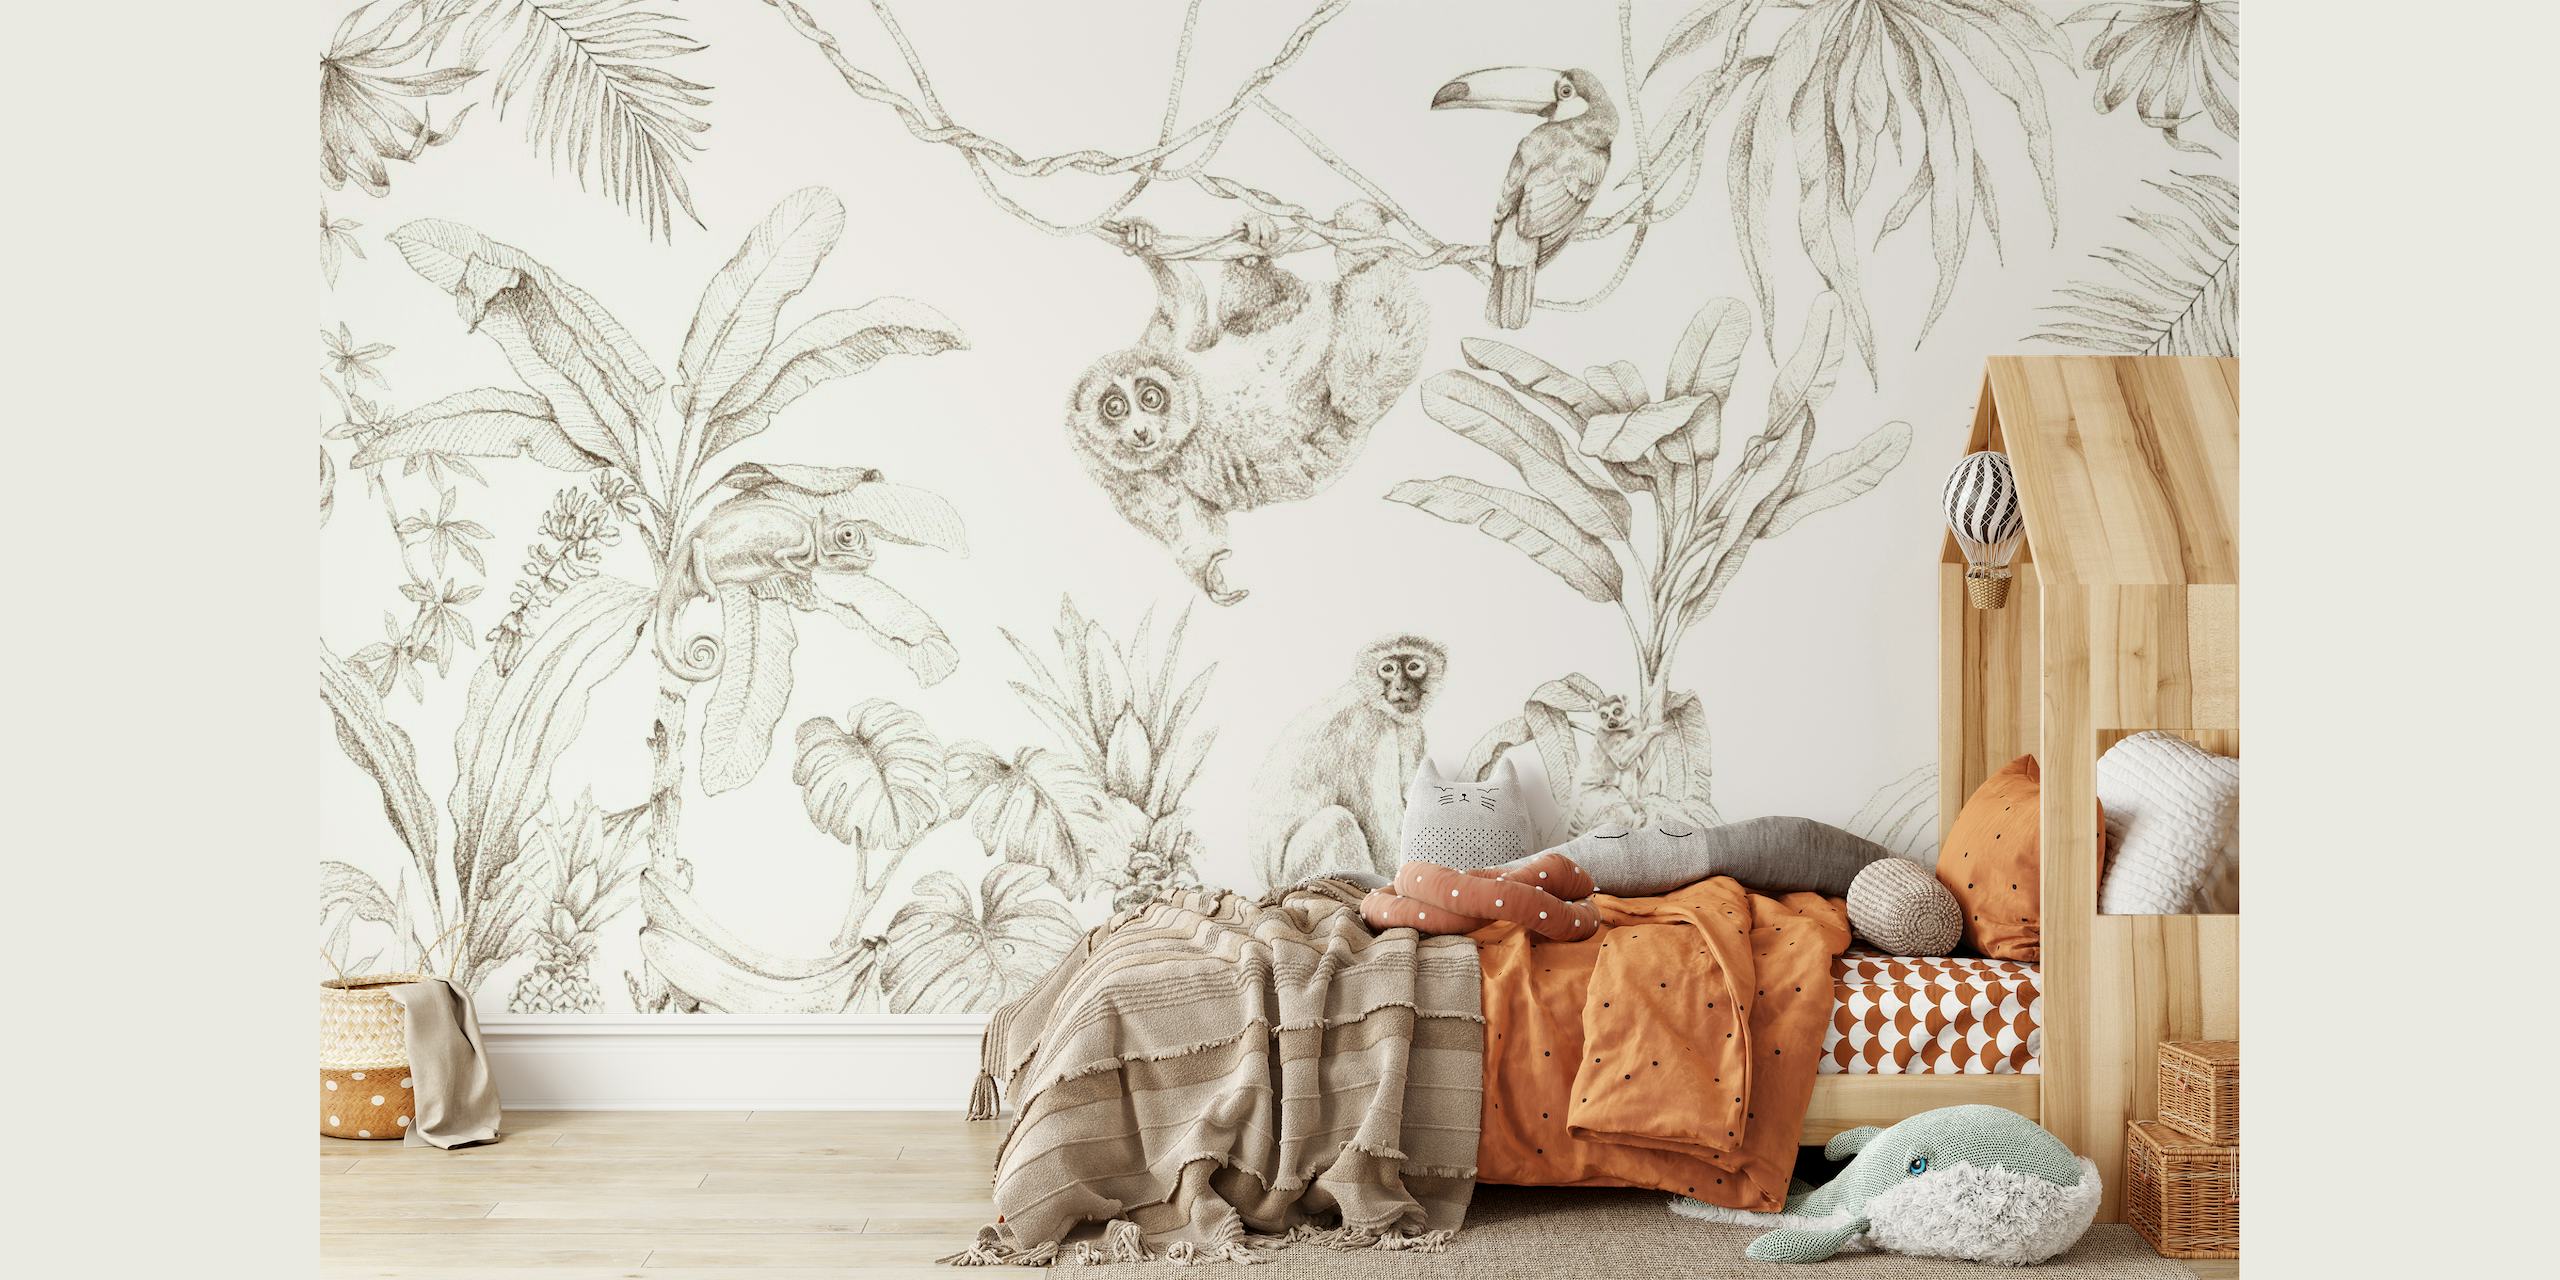 Mural de parede em estilo esboço com vida selvagem africana e plantas tropicais